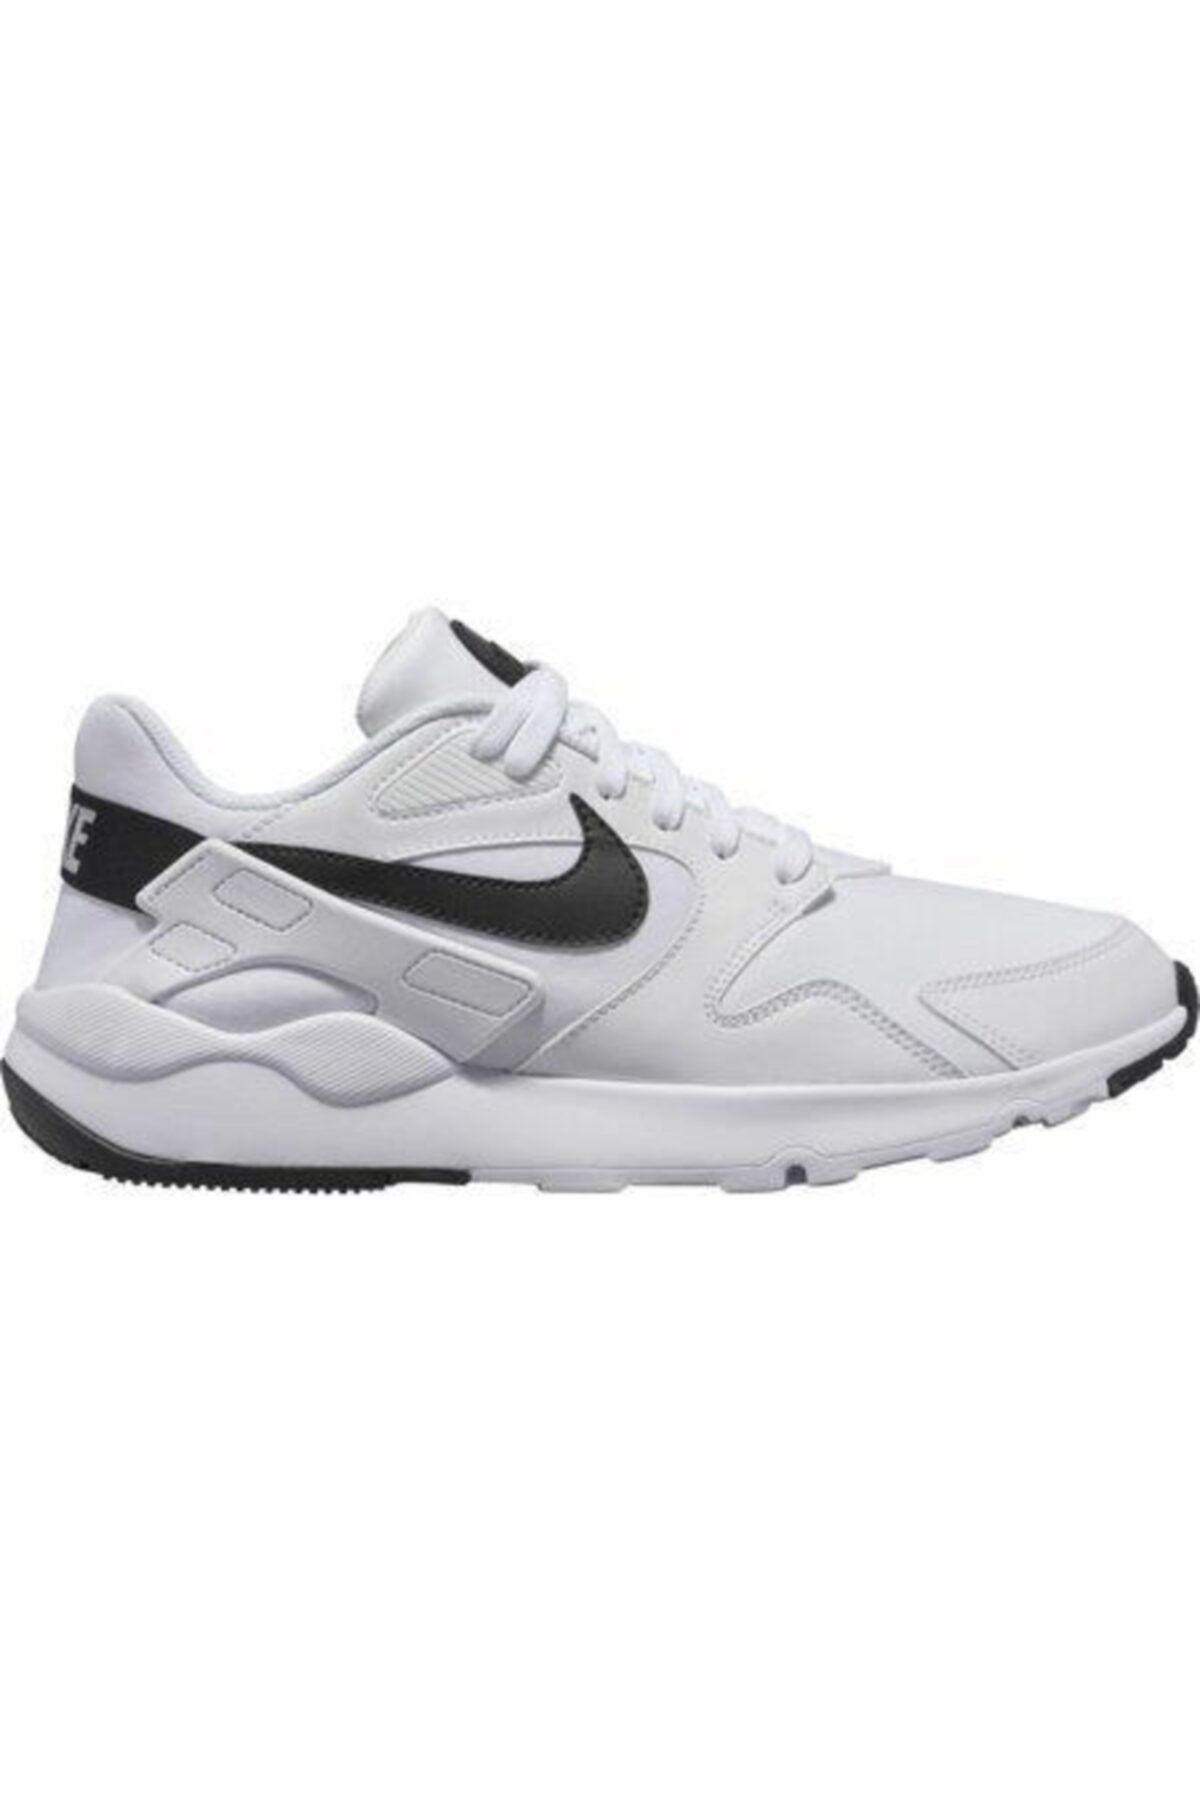 Nike Ld Victory Erkek Beyaz Koşu Ayakkabısı - At4249 - 101